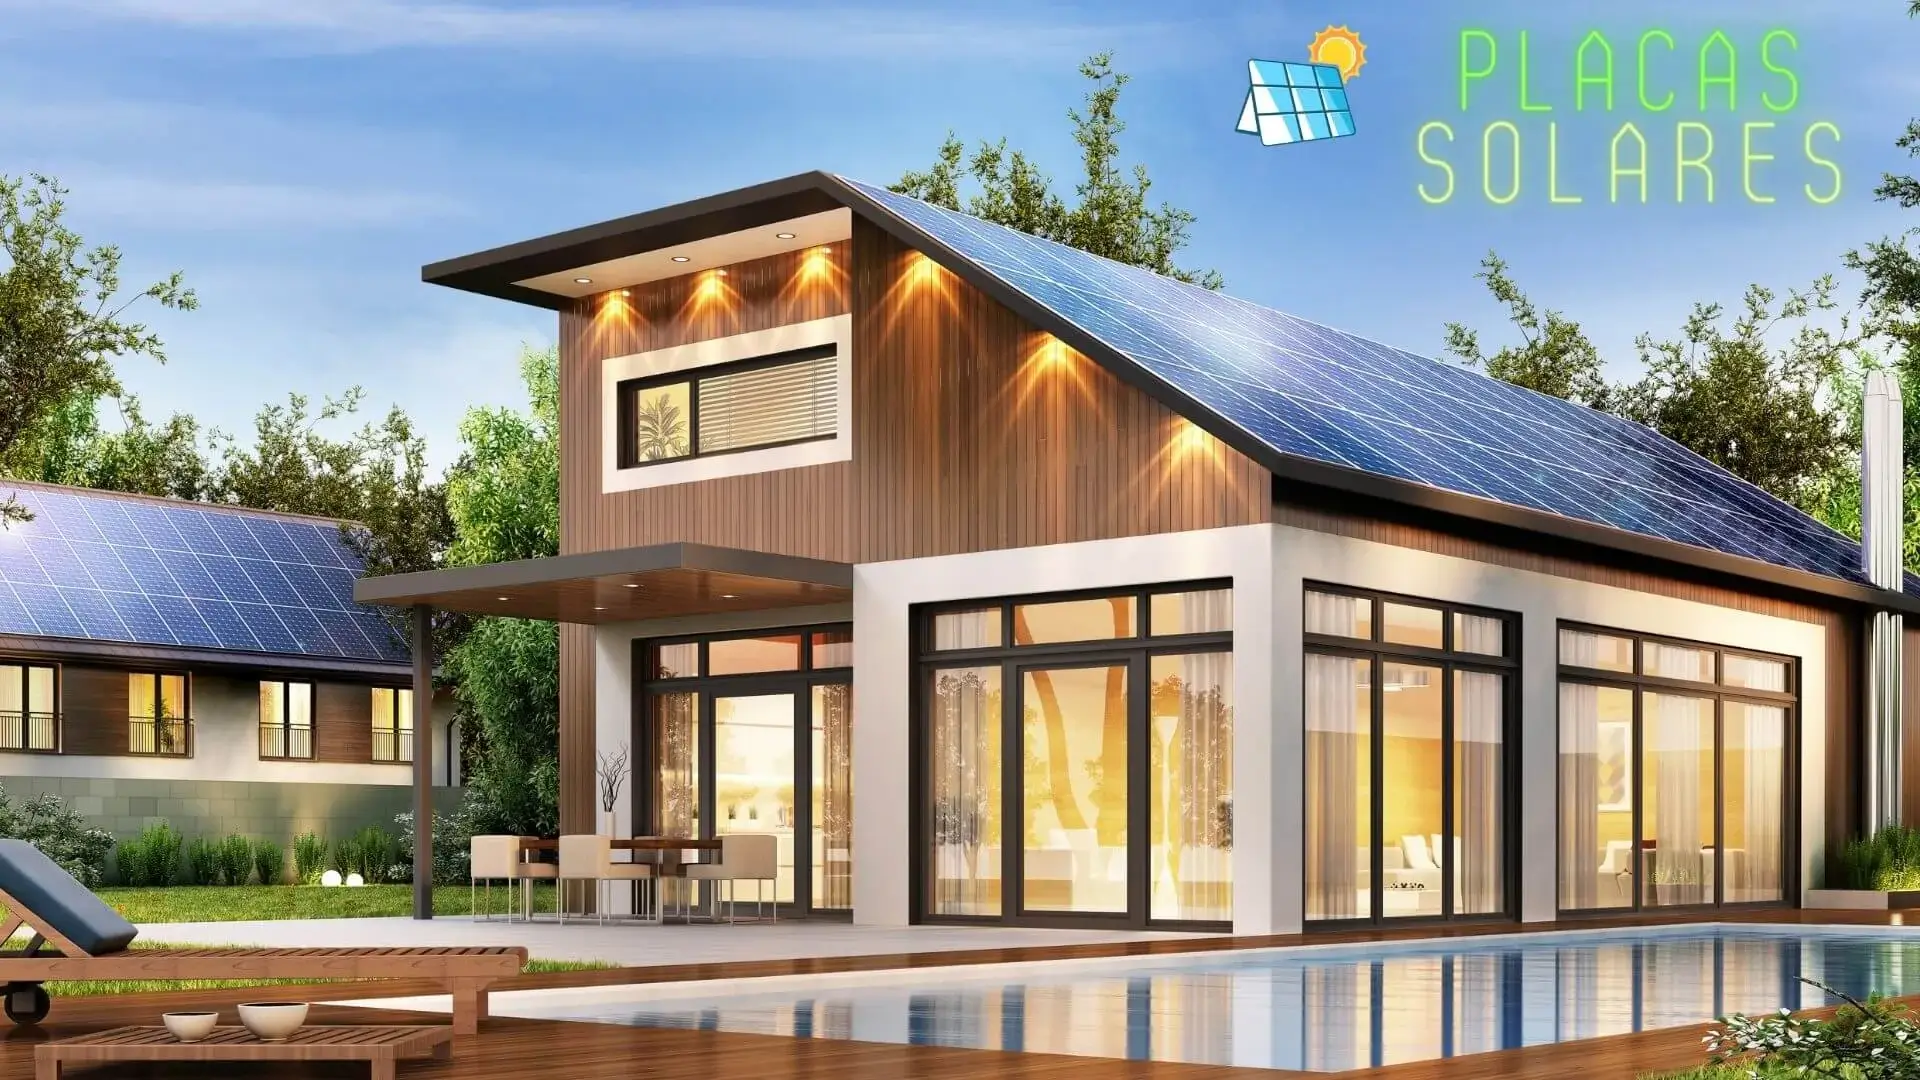 viviendas con placas solares